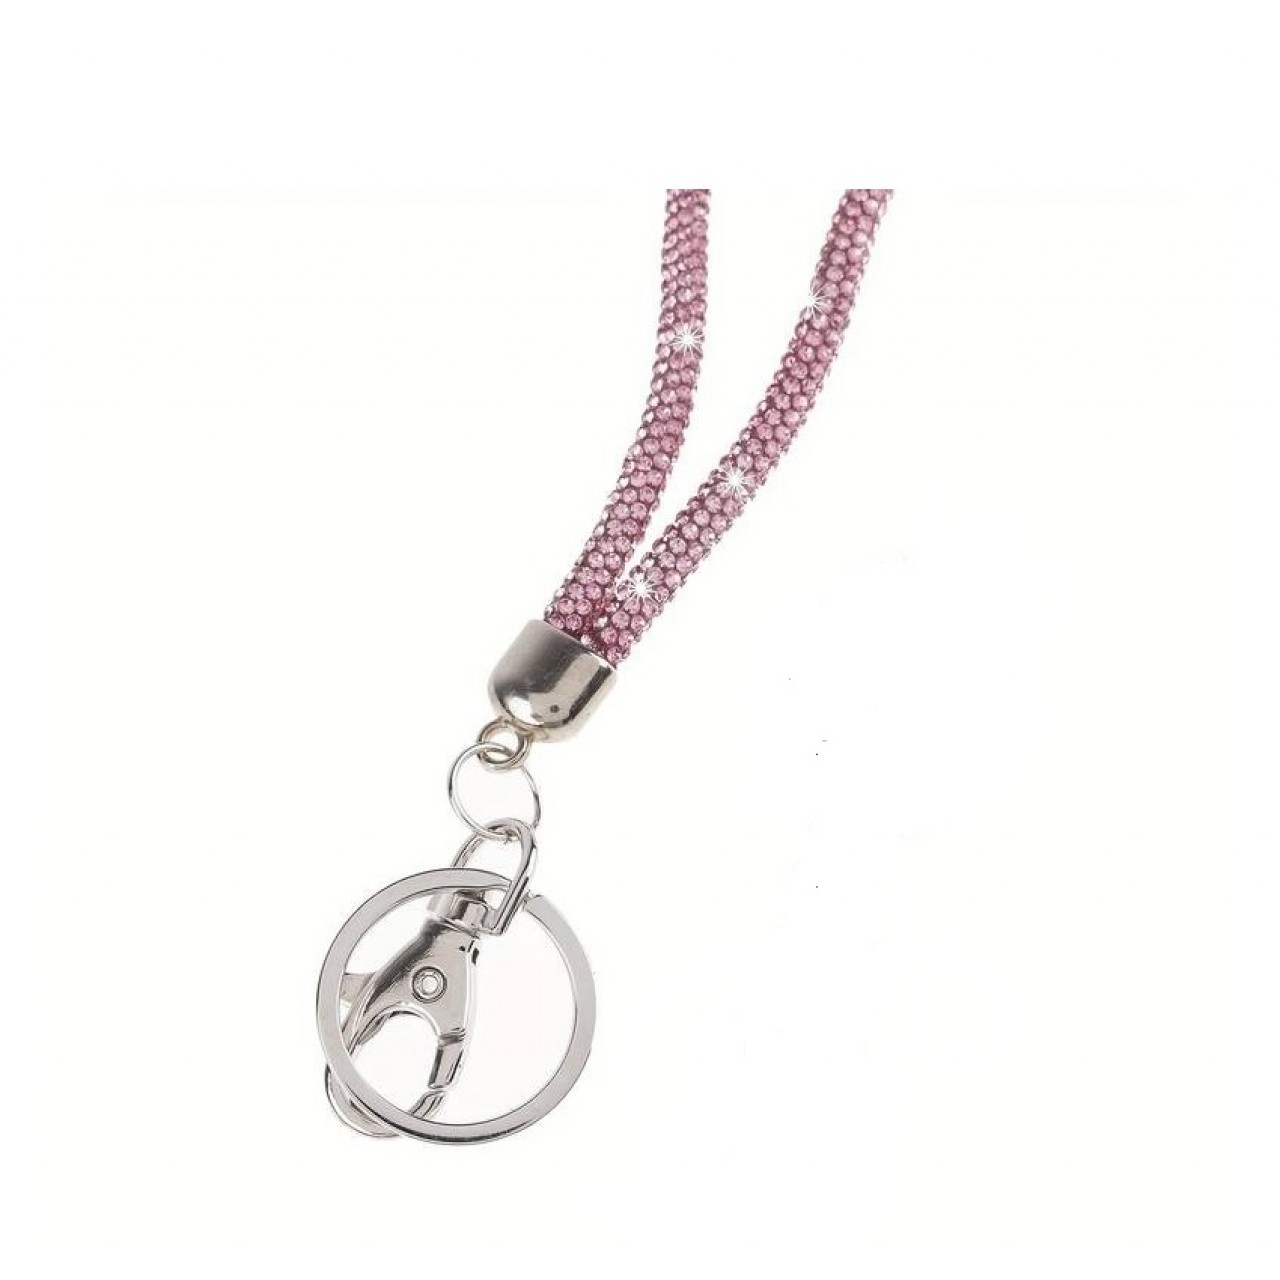 Λουράκι Λαιμού Κινητού Στρας με Μεταλλικό Δαχτυλίδι Ροζ - Pink Mobile Strass Necklace